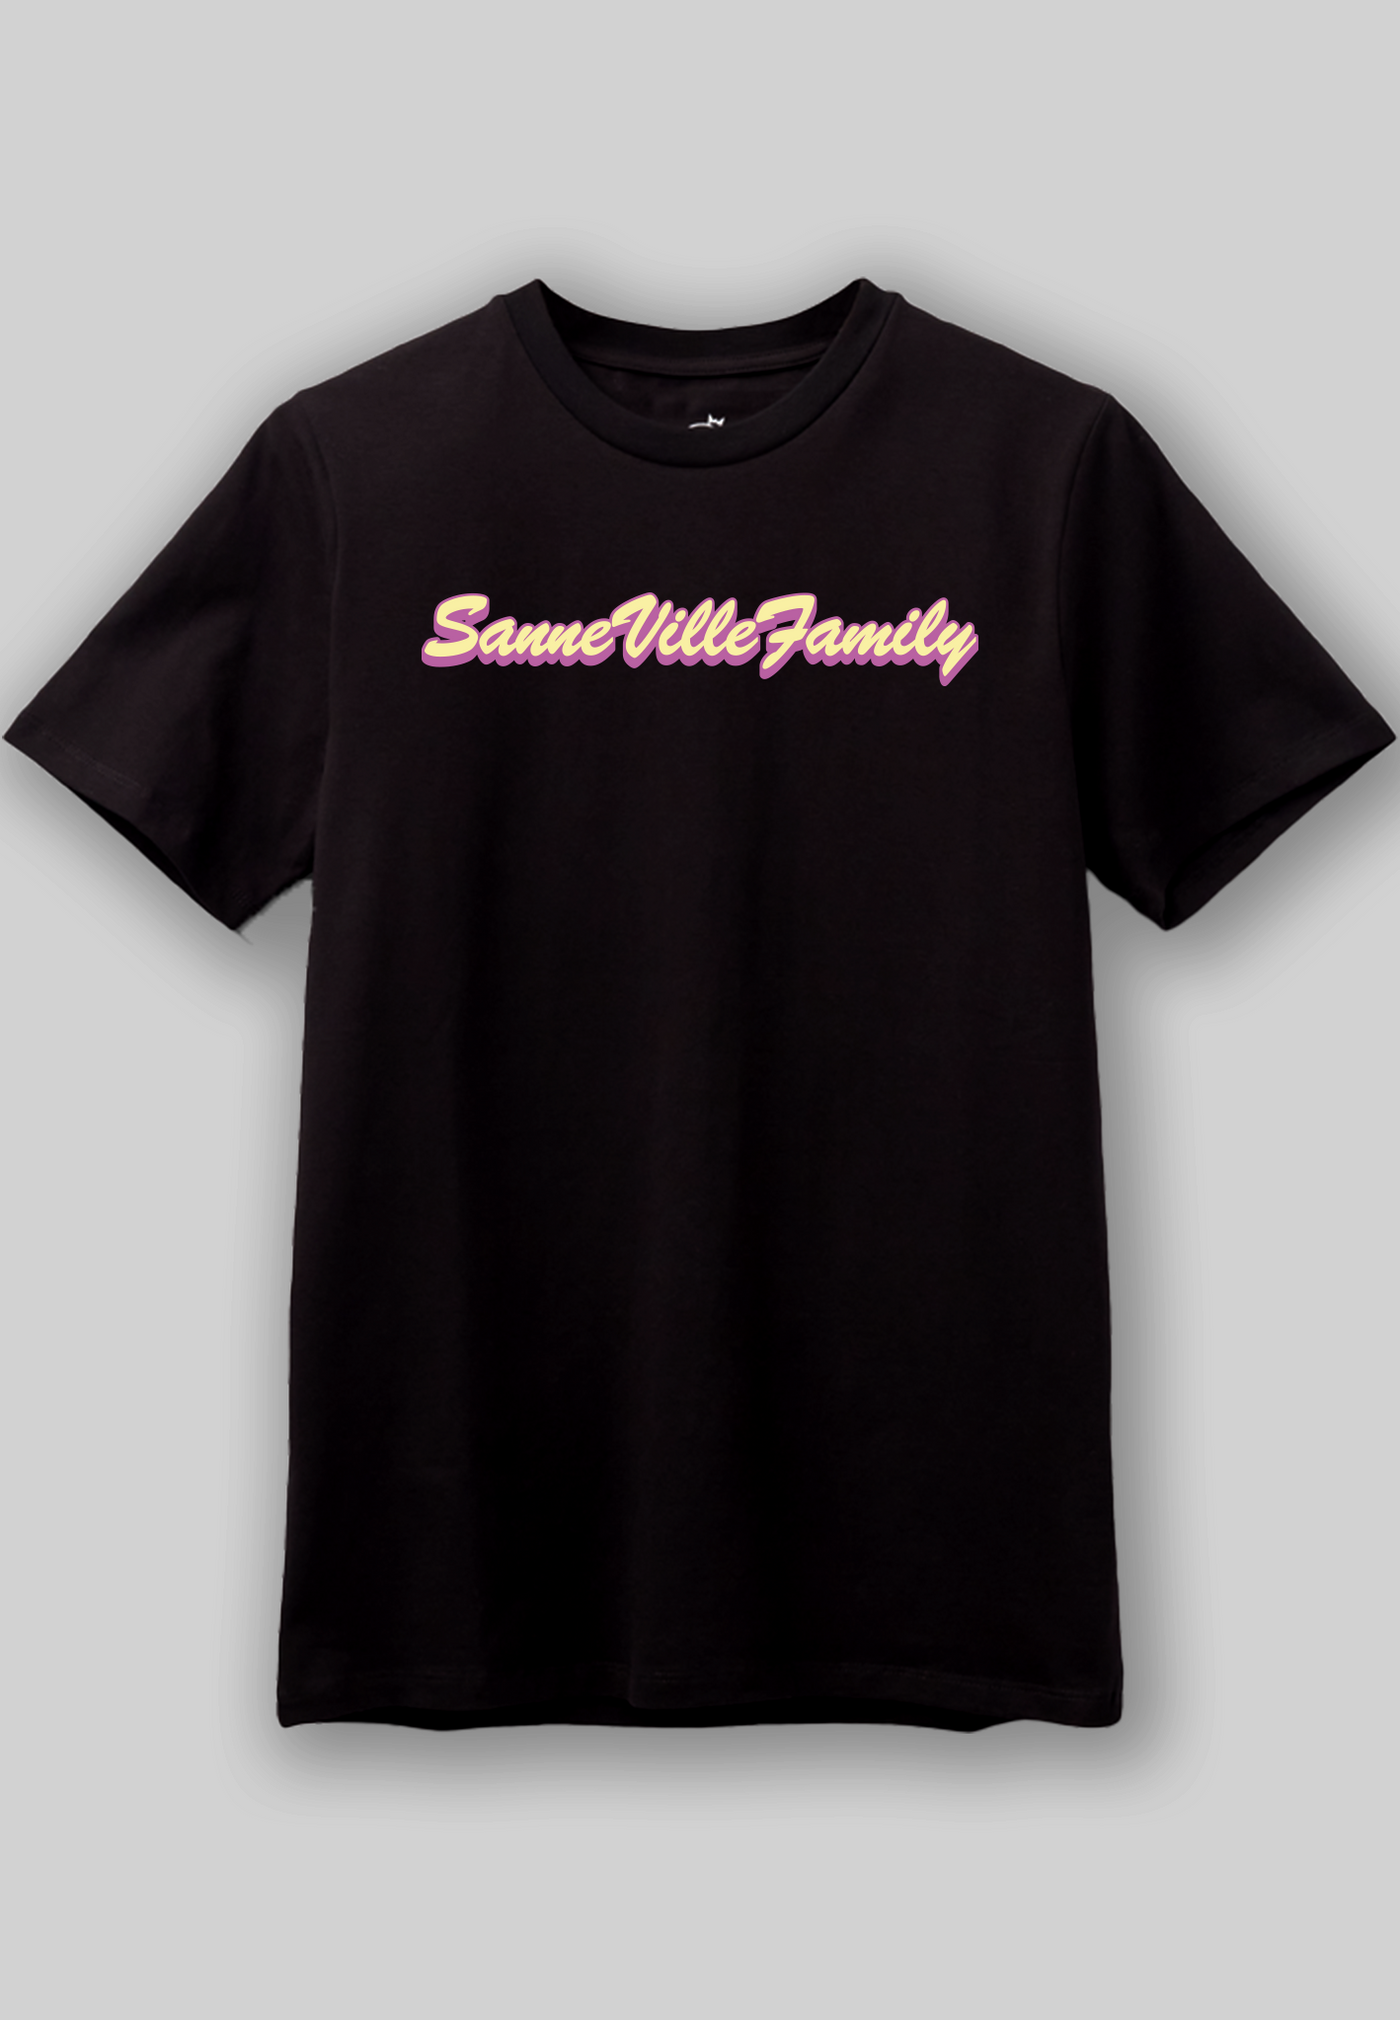 SanneVilleFamily - Tekst - Svart T-skjorte